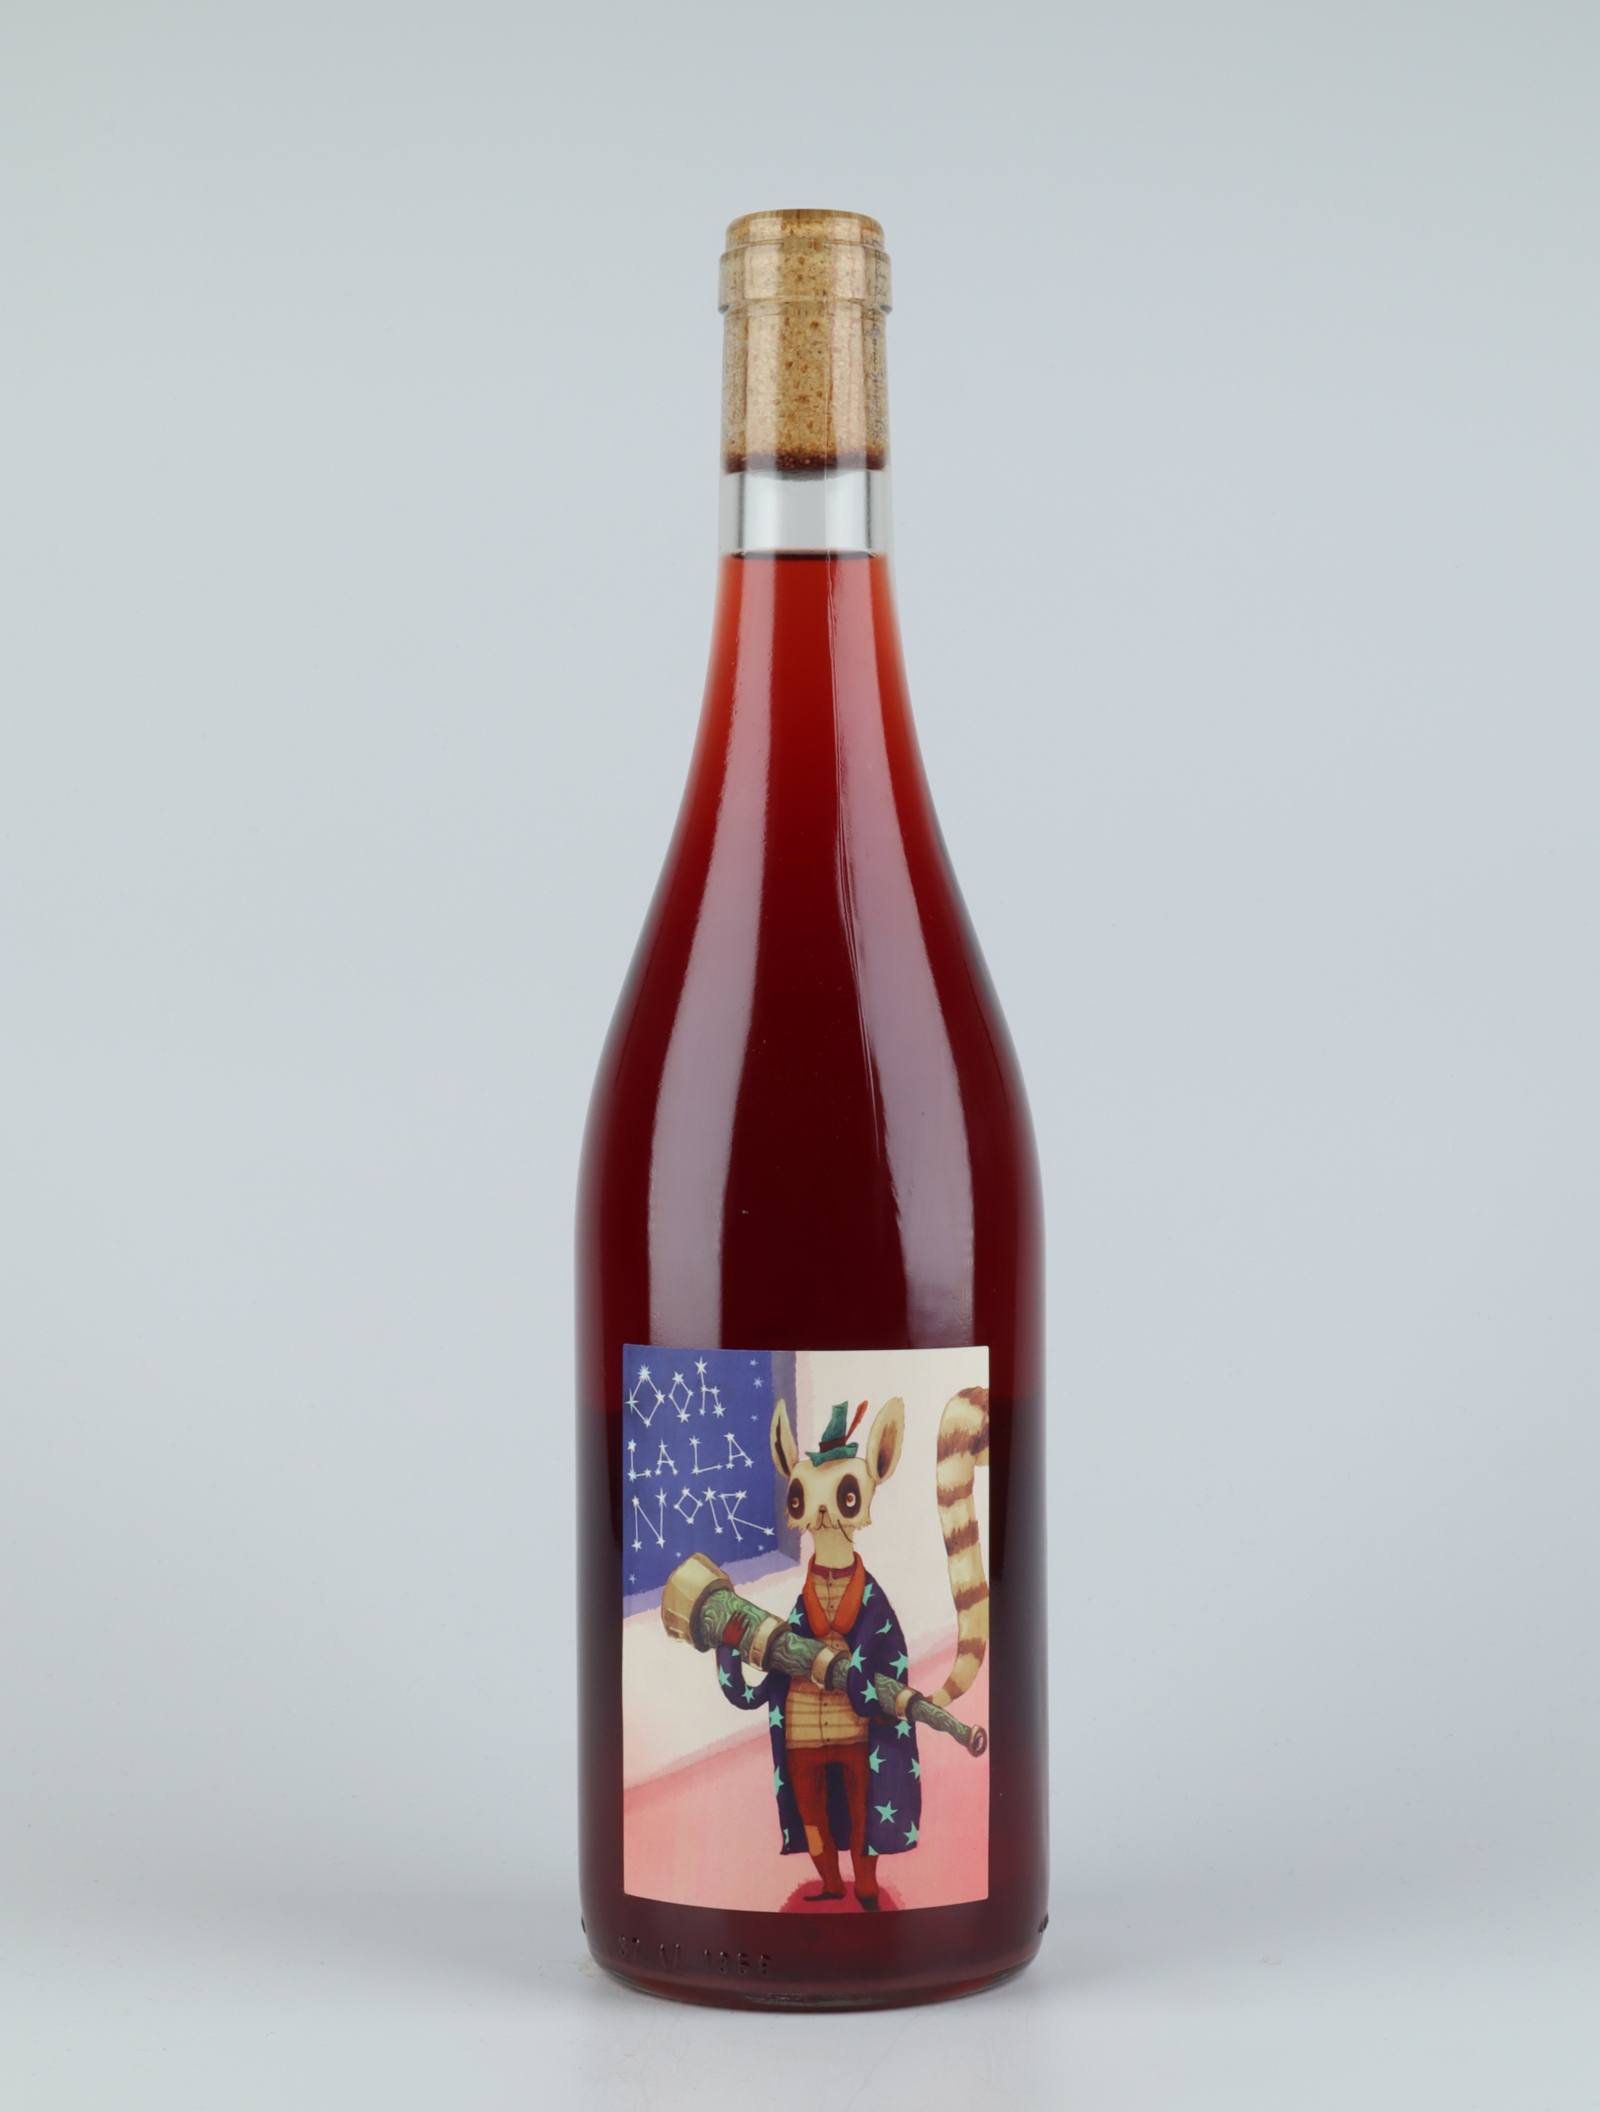 En flaske 2019 Oh la la Noir - Carbonic Pinot Rødvin fra Good Intentions Wine Co., South Australia i Australien